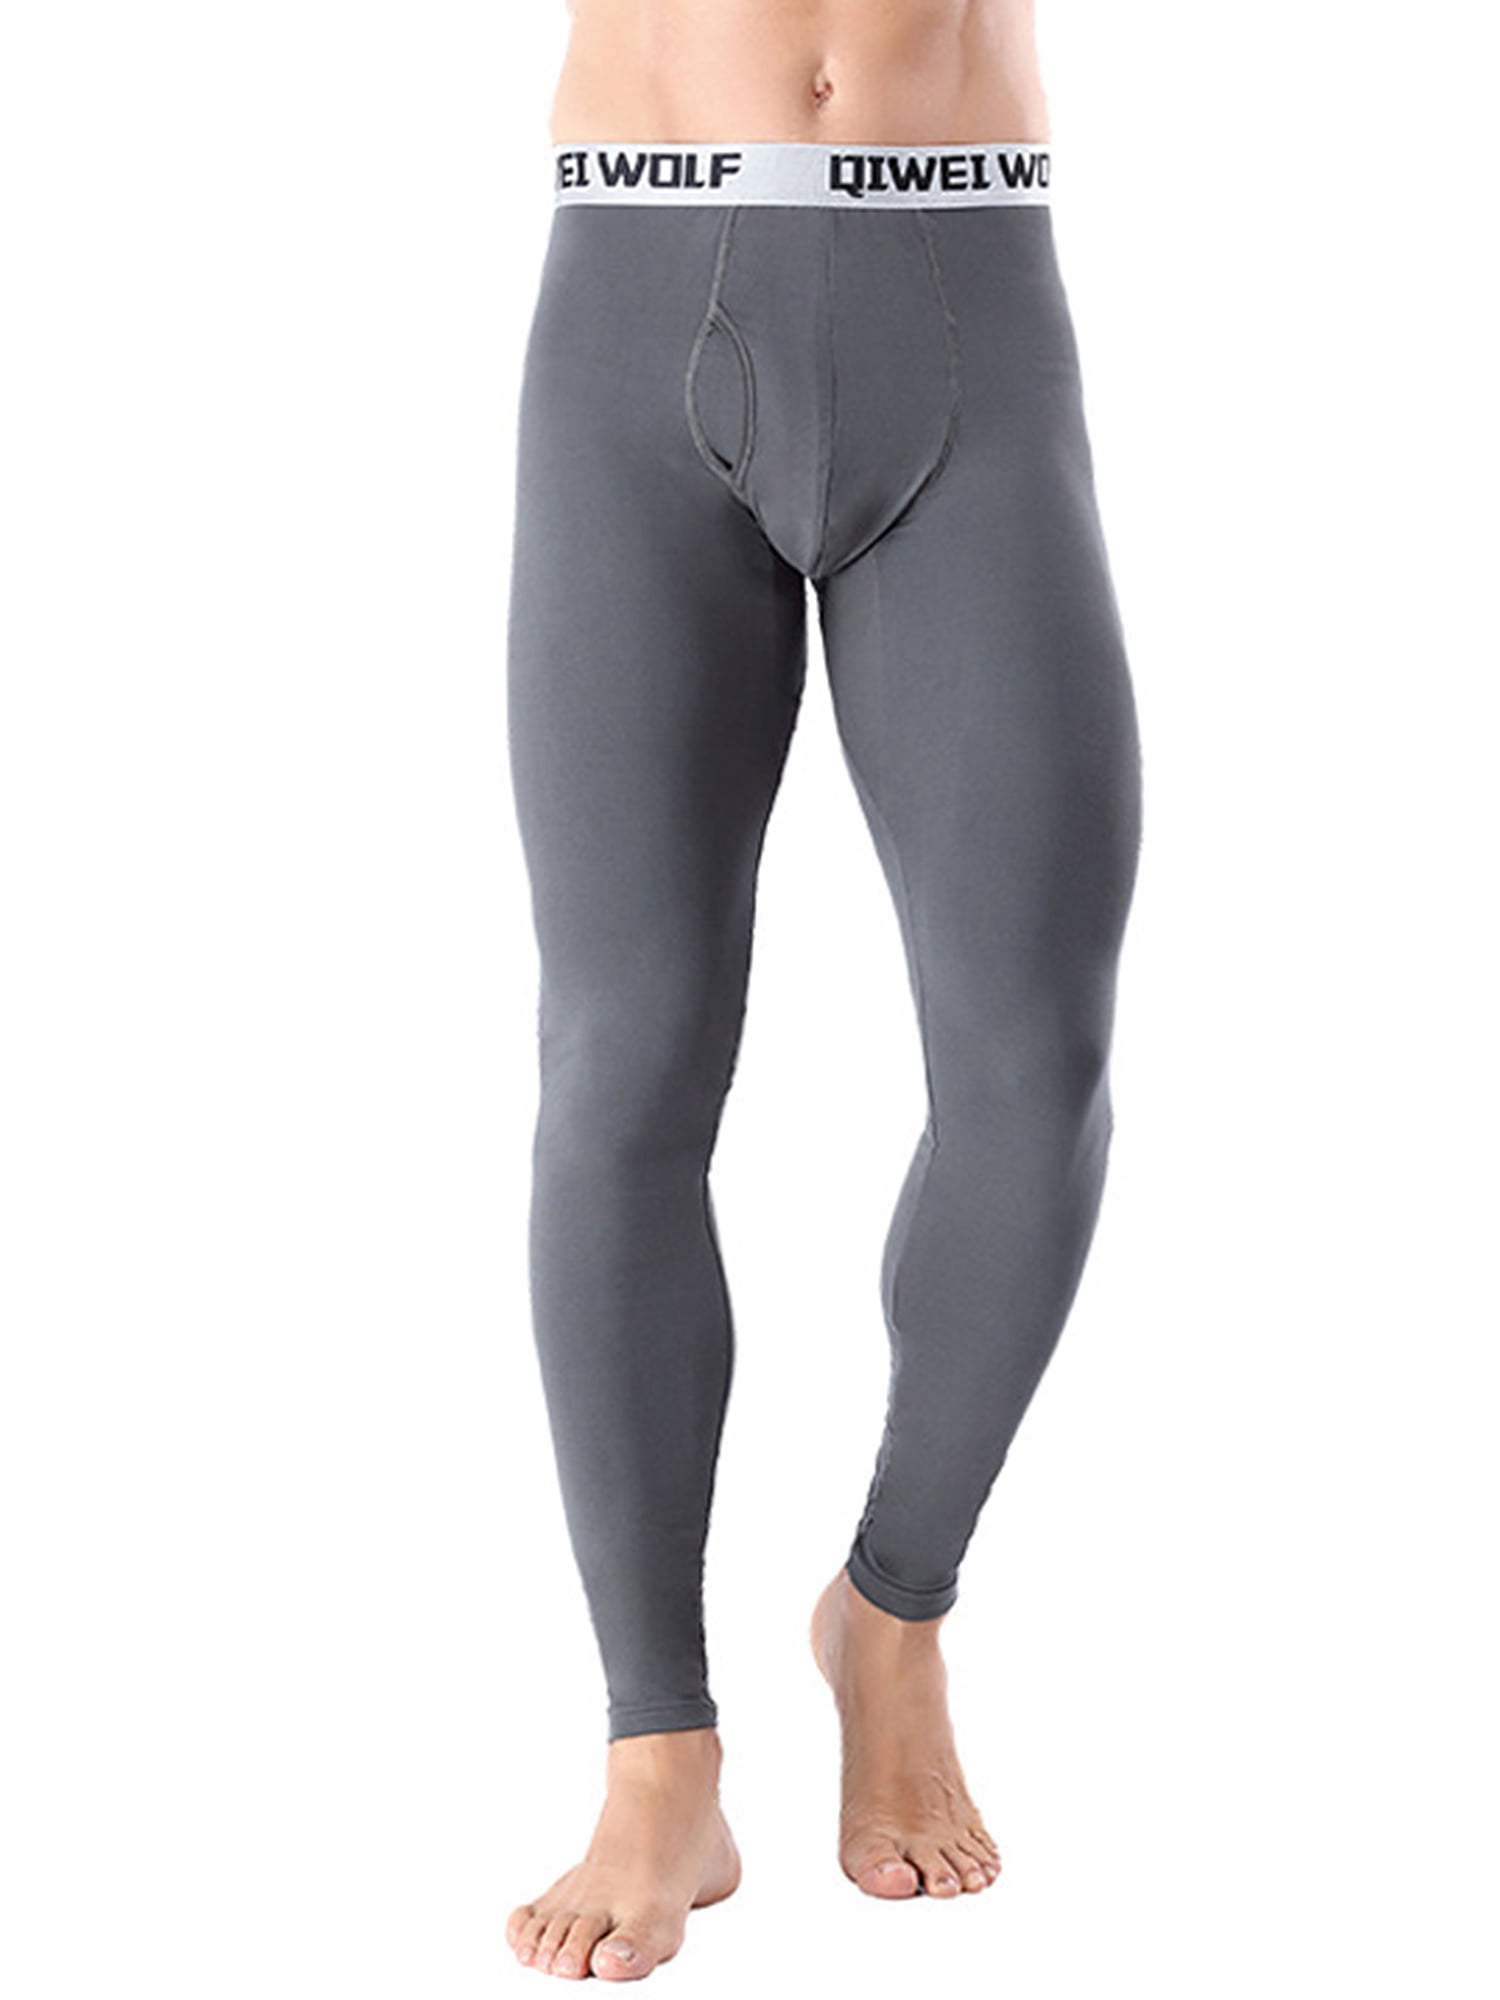 Select size/color ClimateSmart Men's Midweight ClimateFlex Base Layer Pants 